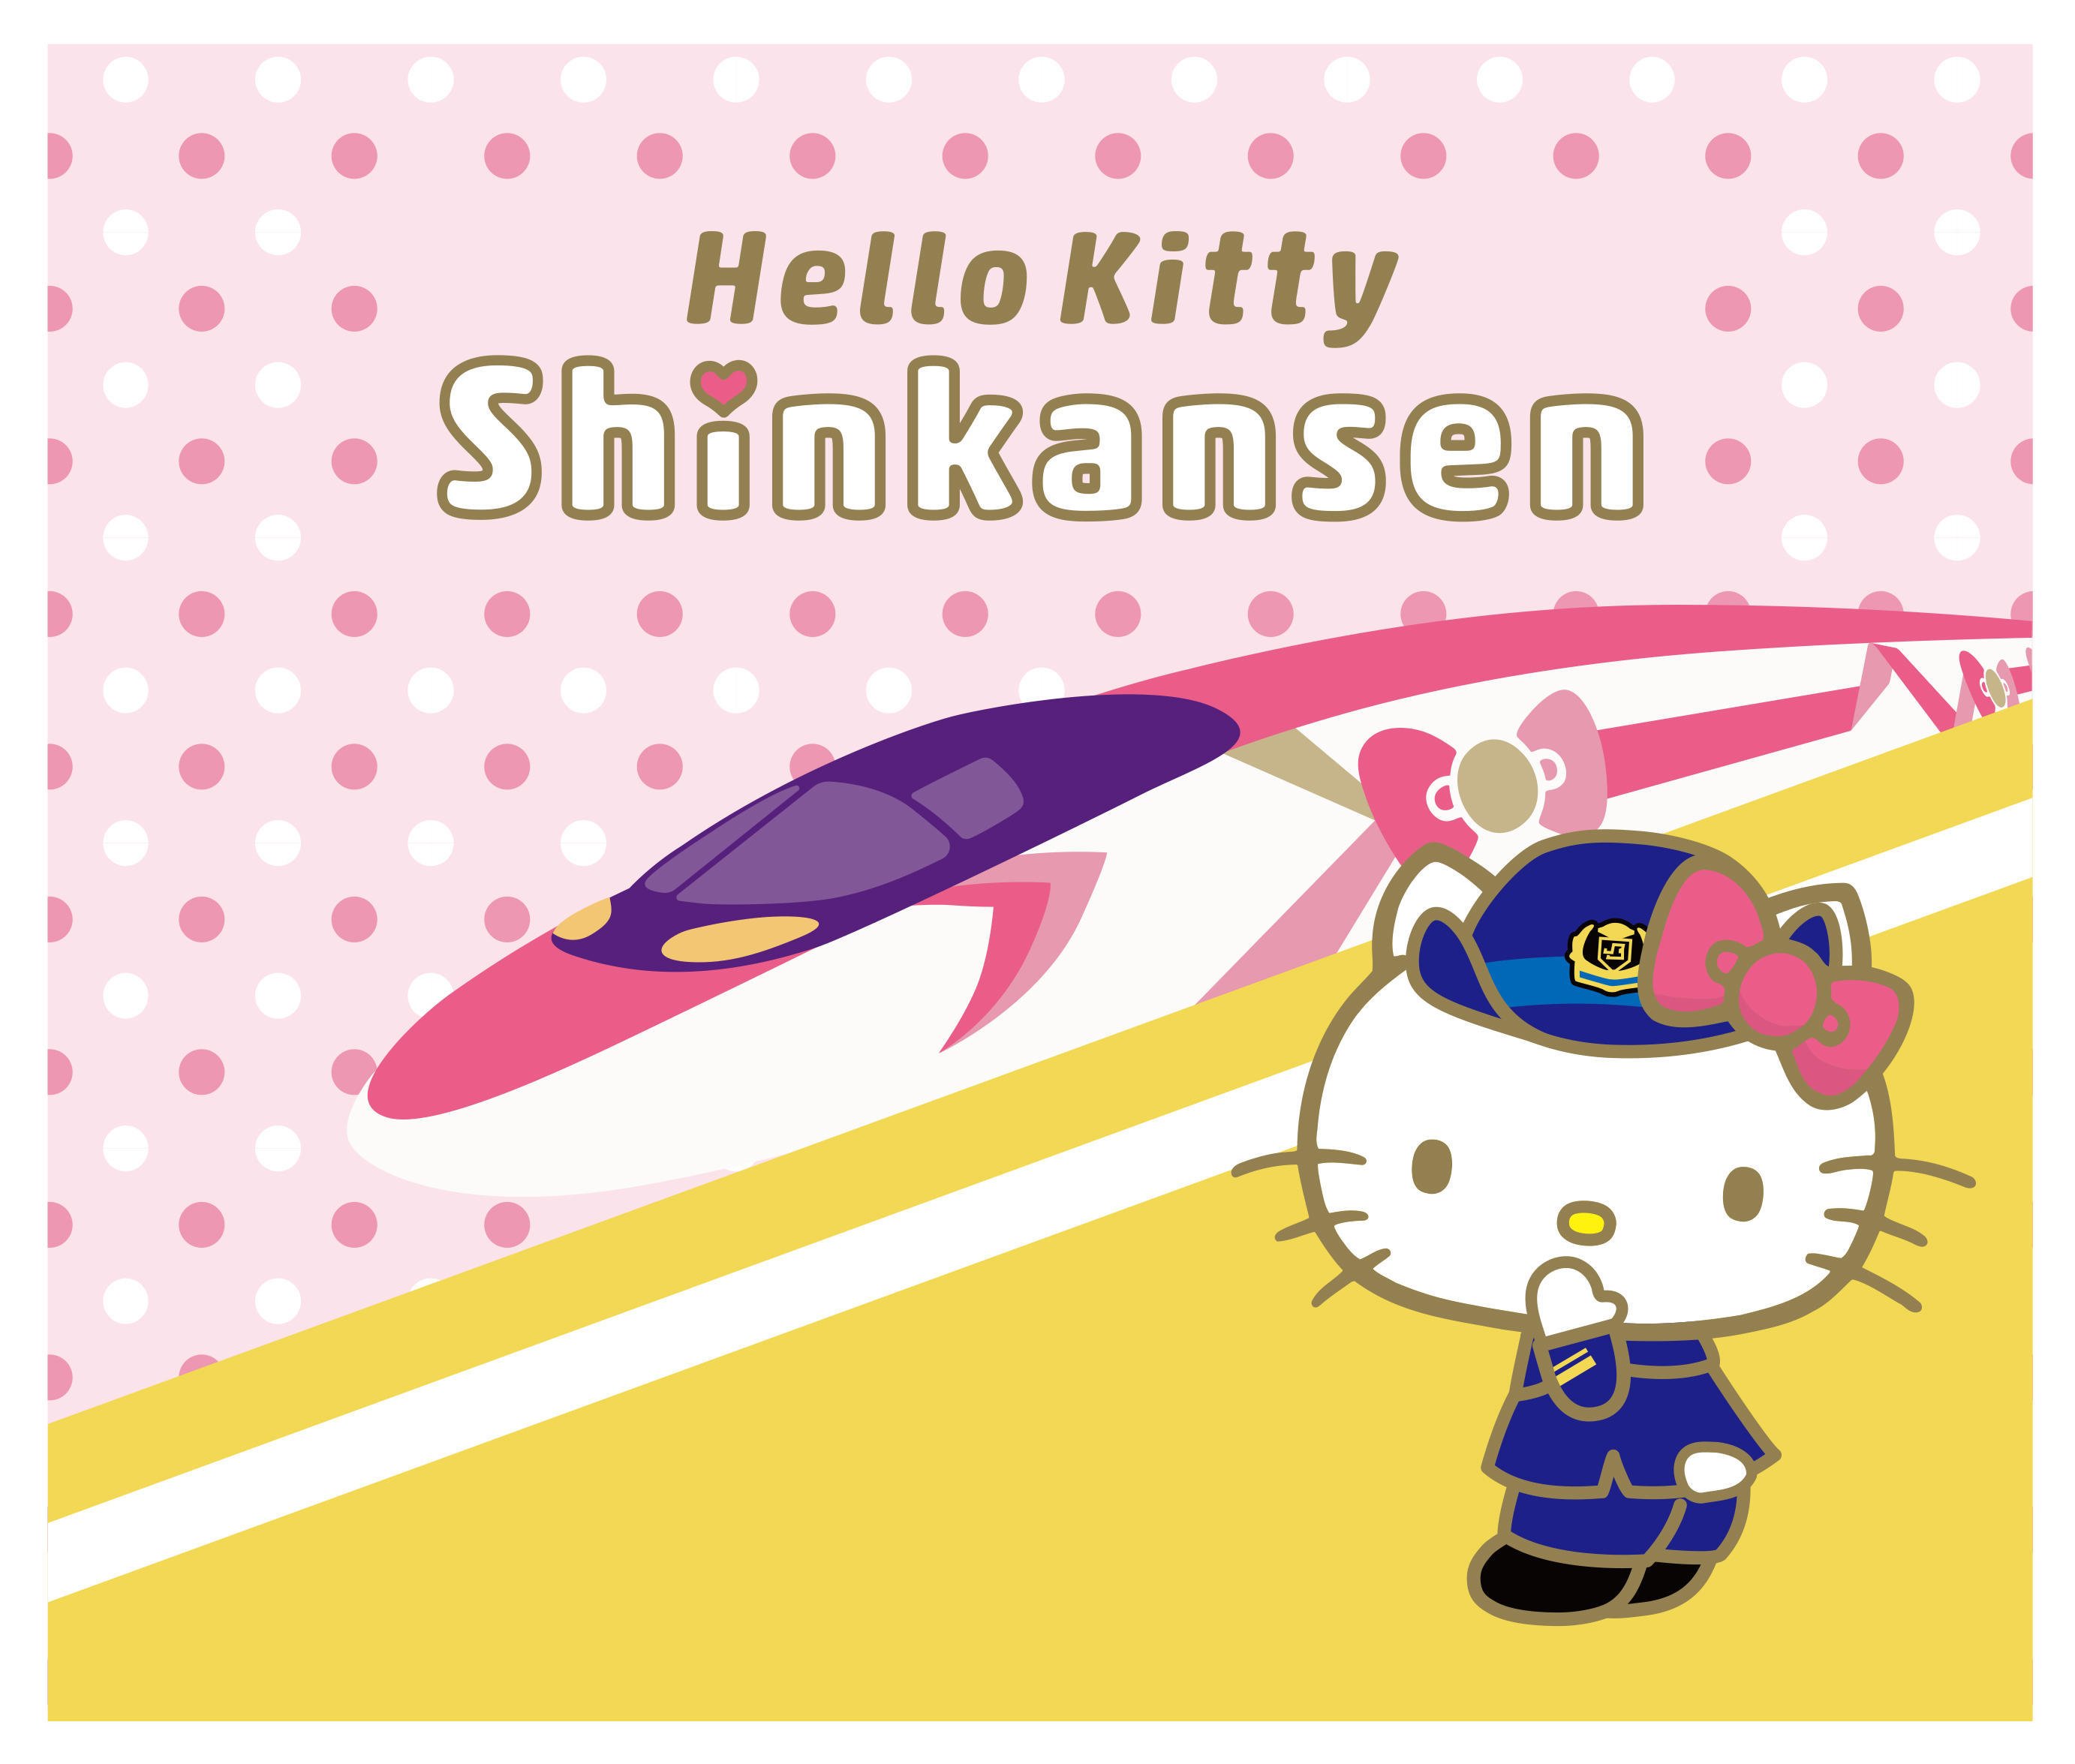 500 type eva is replaced to hello kitty shinkansen 03